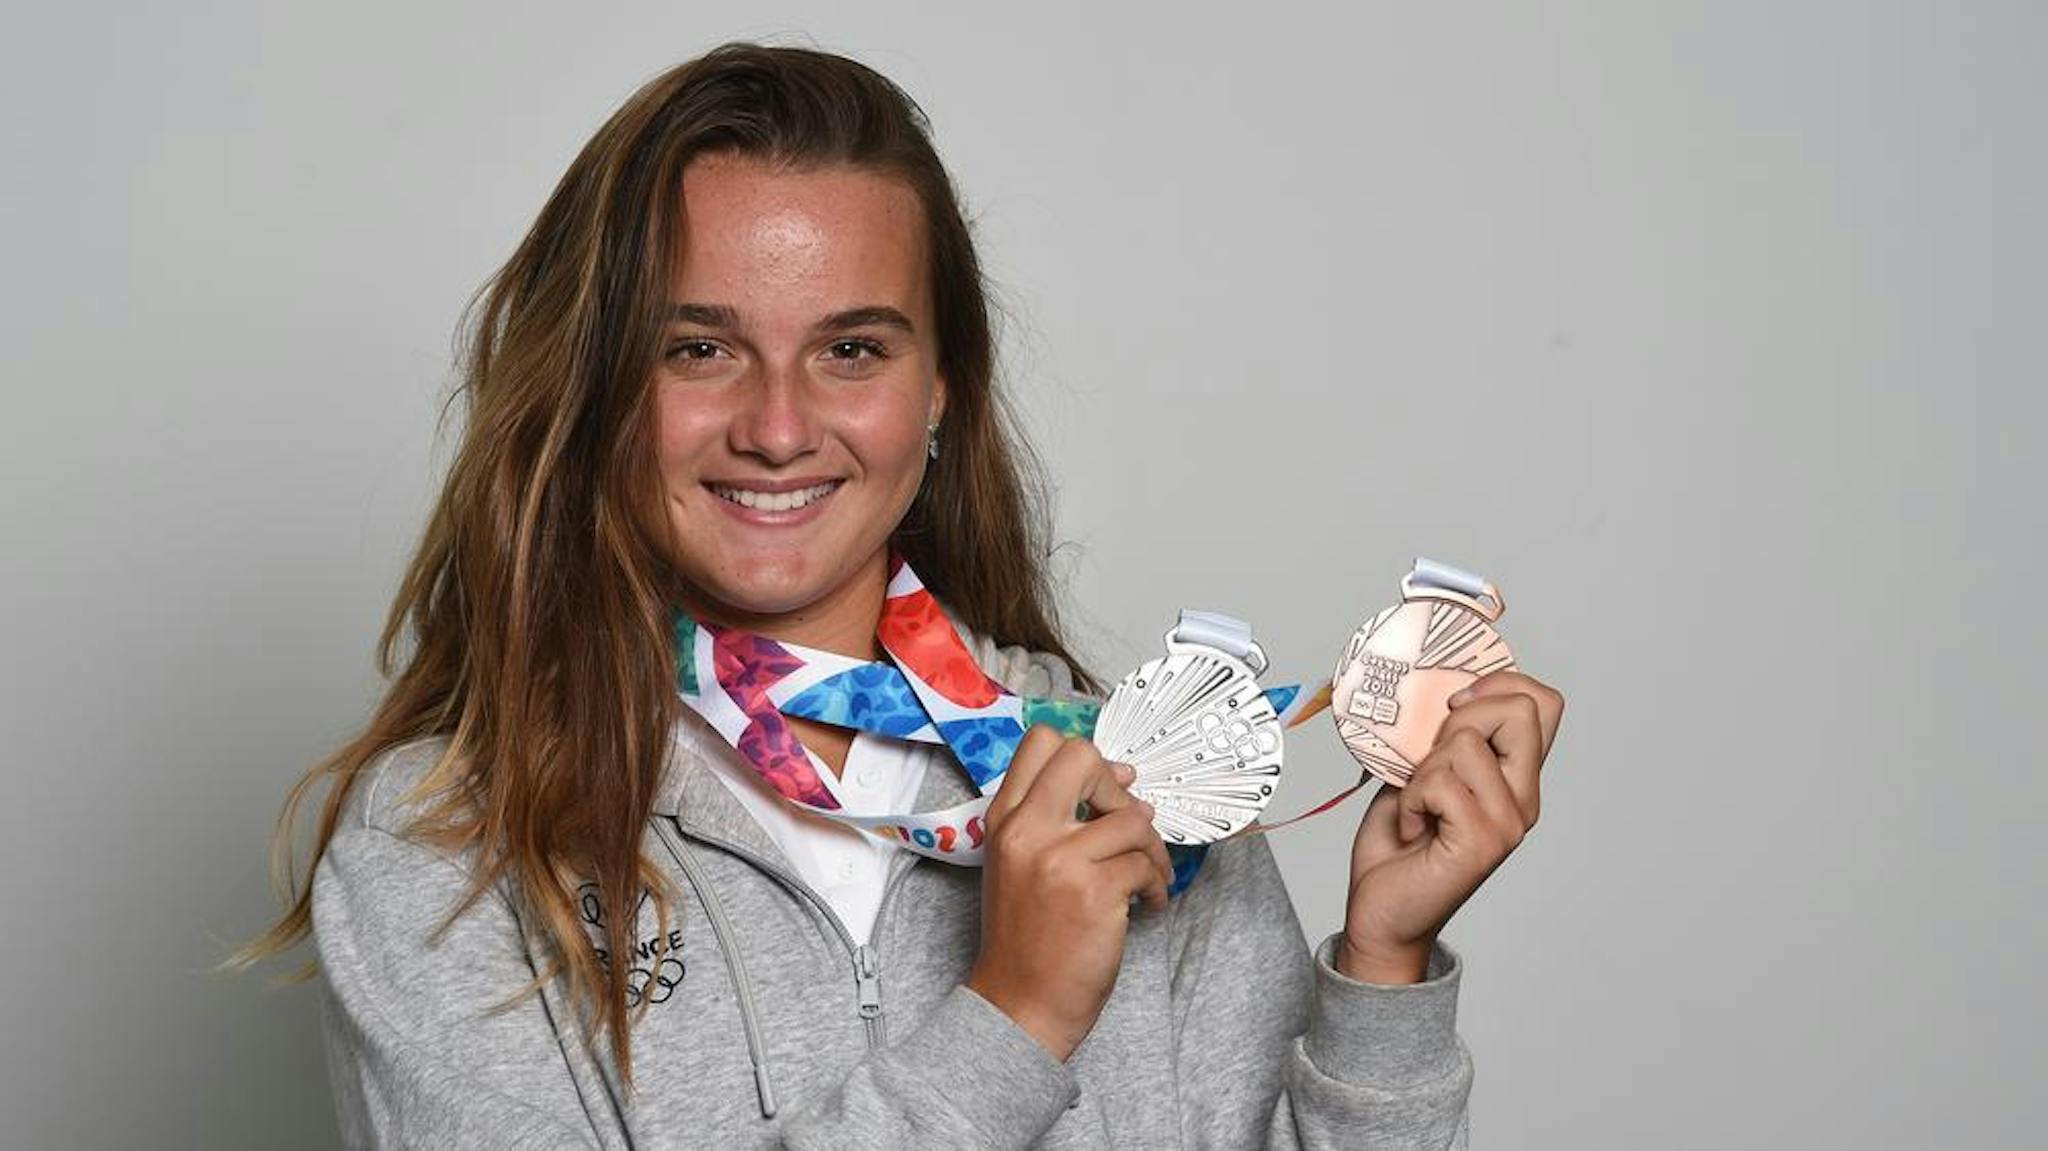 Double médaillée aux Jeux Olympiques de la jeunesse à Buenos Aires en 2018, Clara Burel rêve de représenter la France lors des Jeux de Paris 2024 !